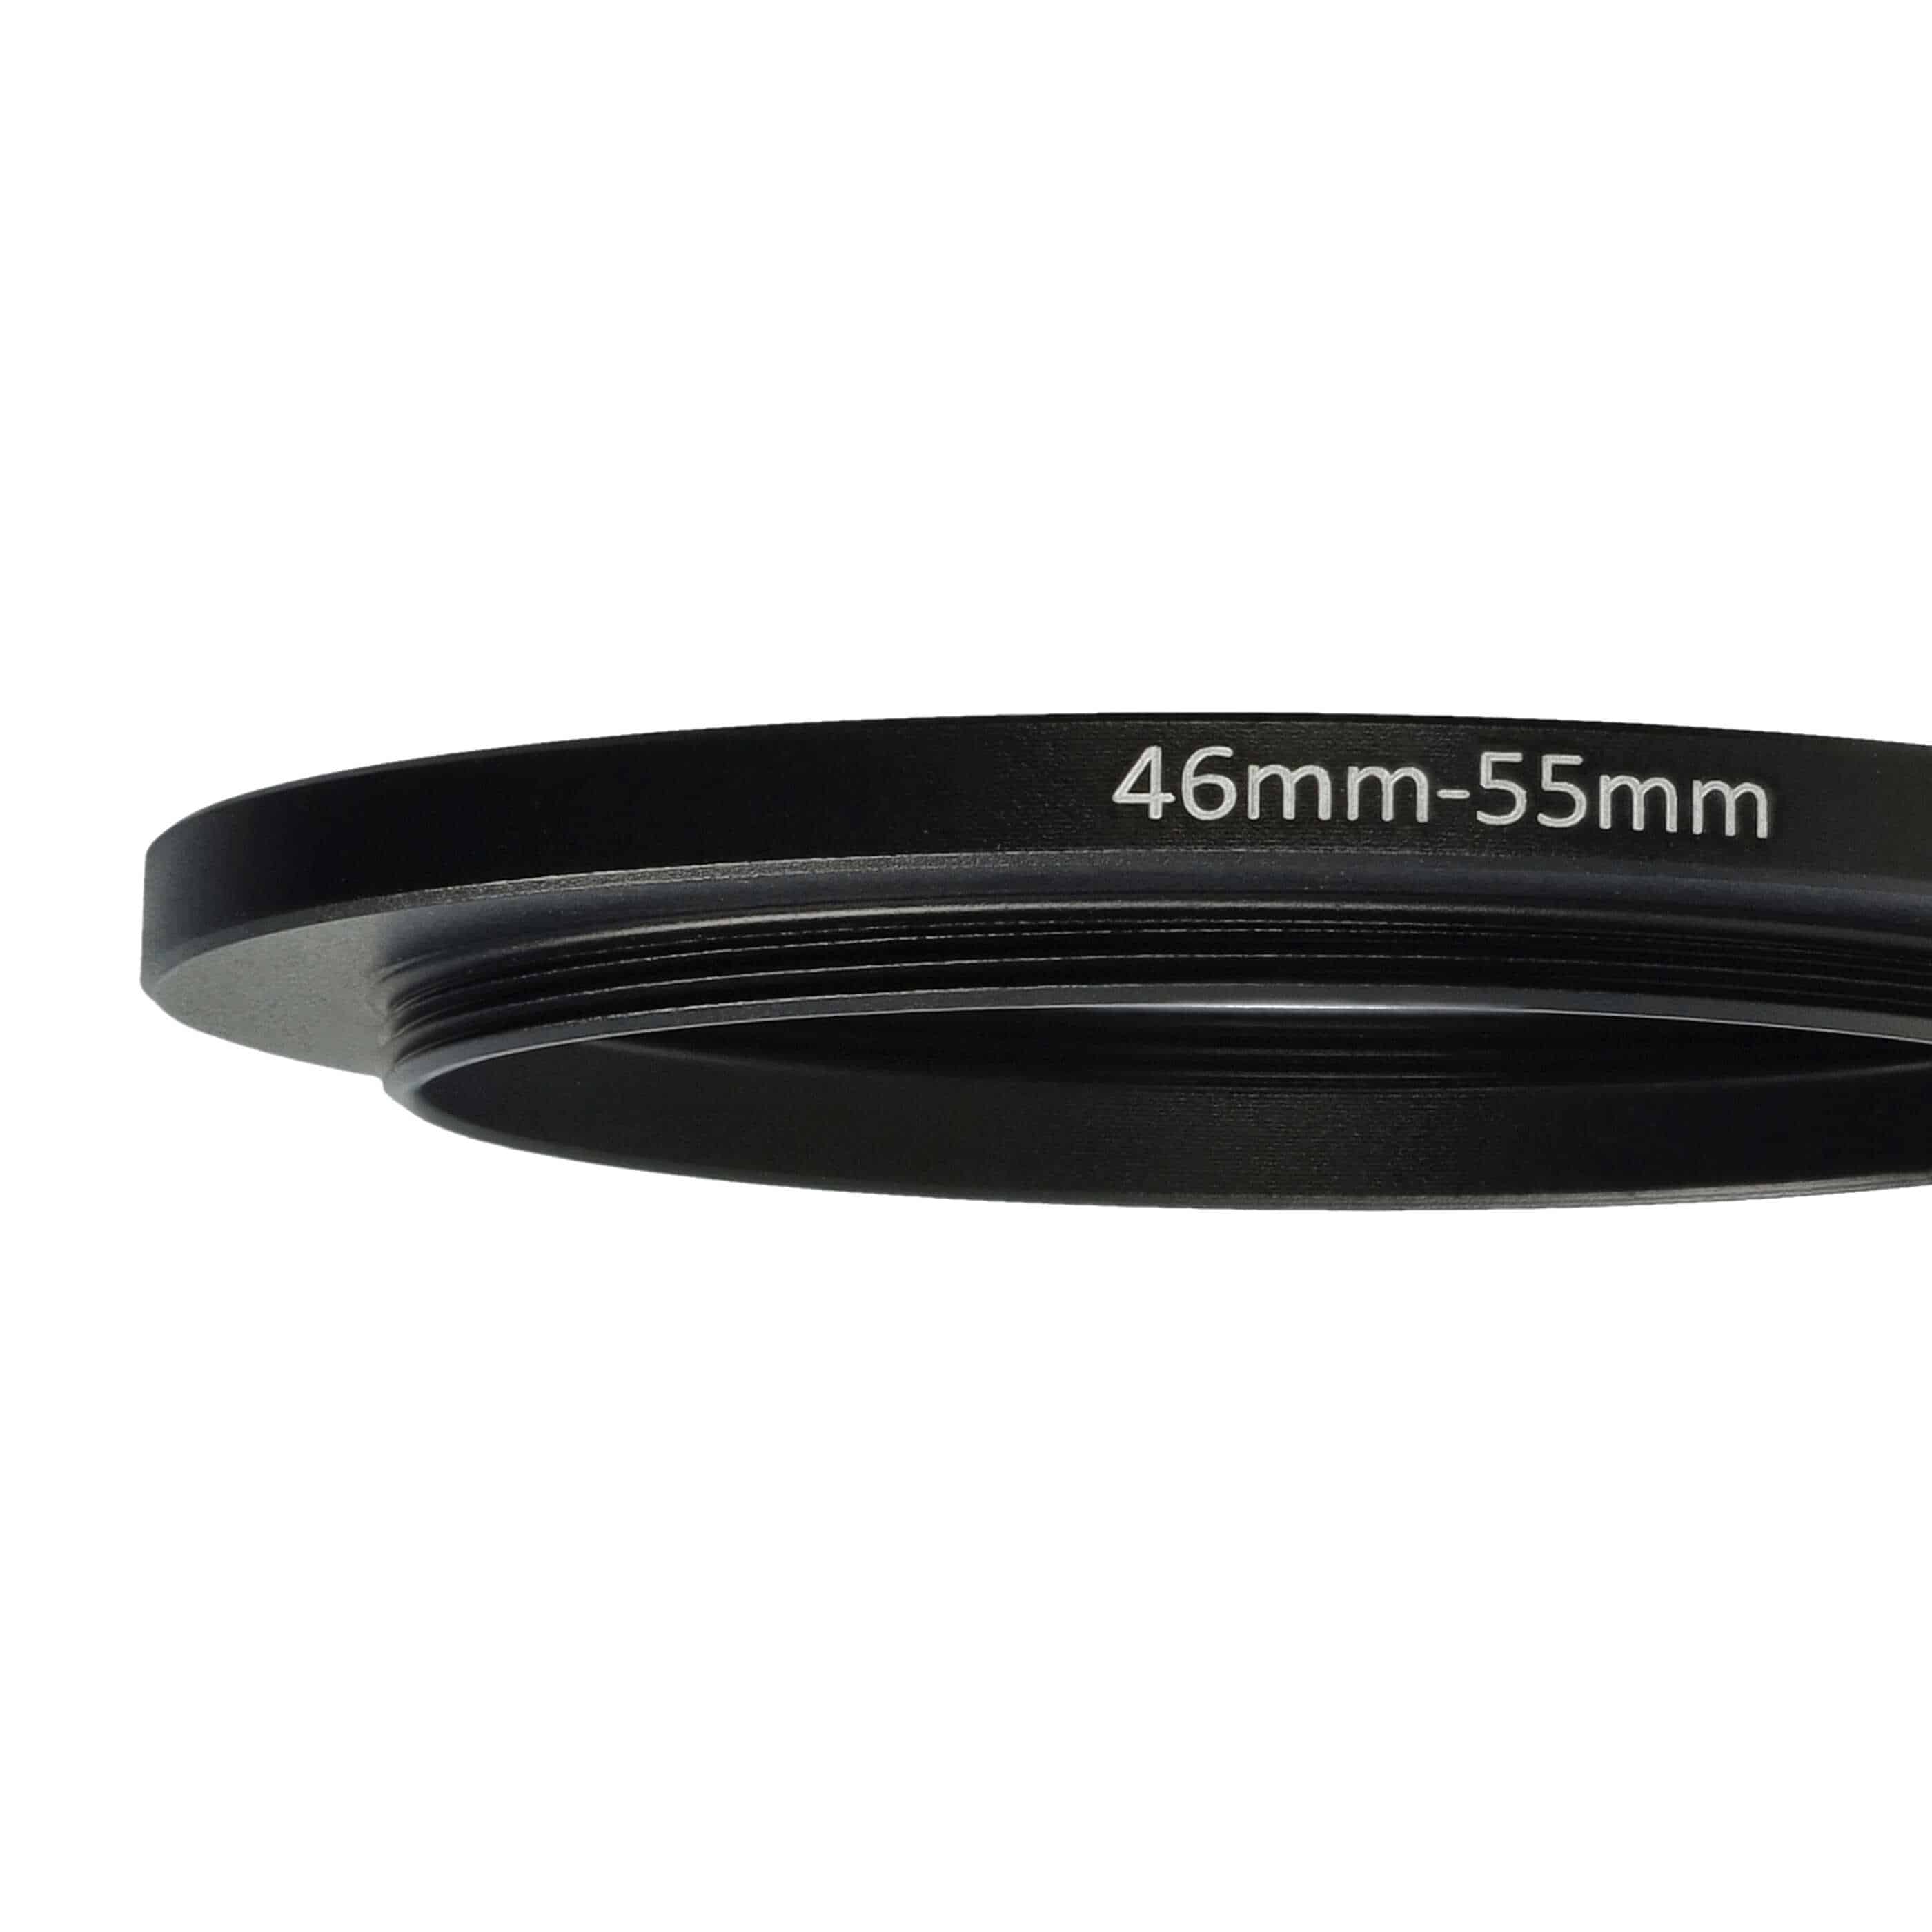 Bague Step-up 46 mm vers 55 mm pour divers objectifs d'appareil photo - Adaptateur filtre